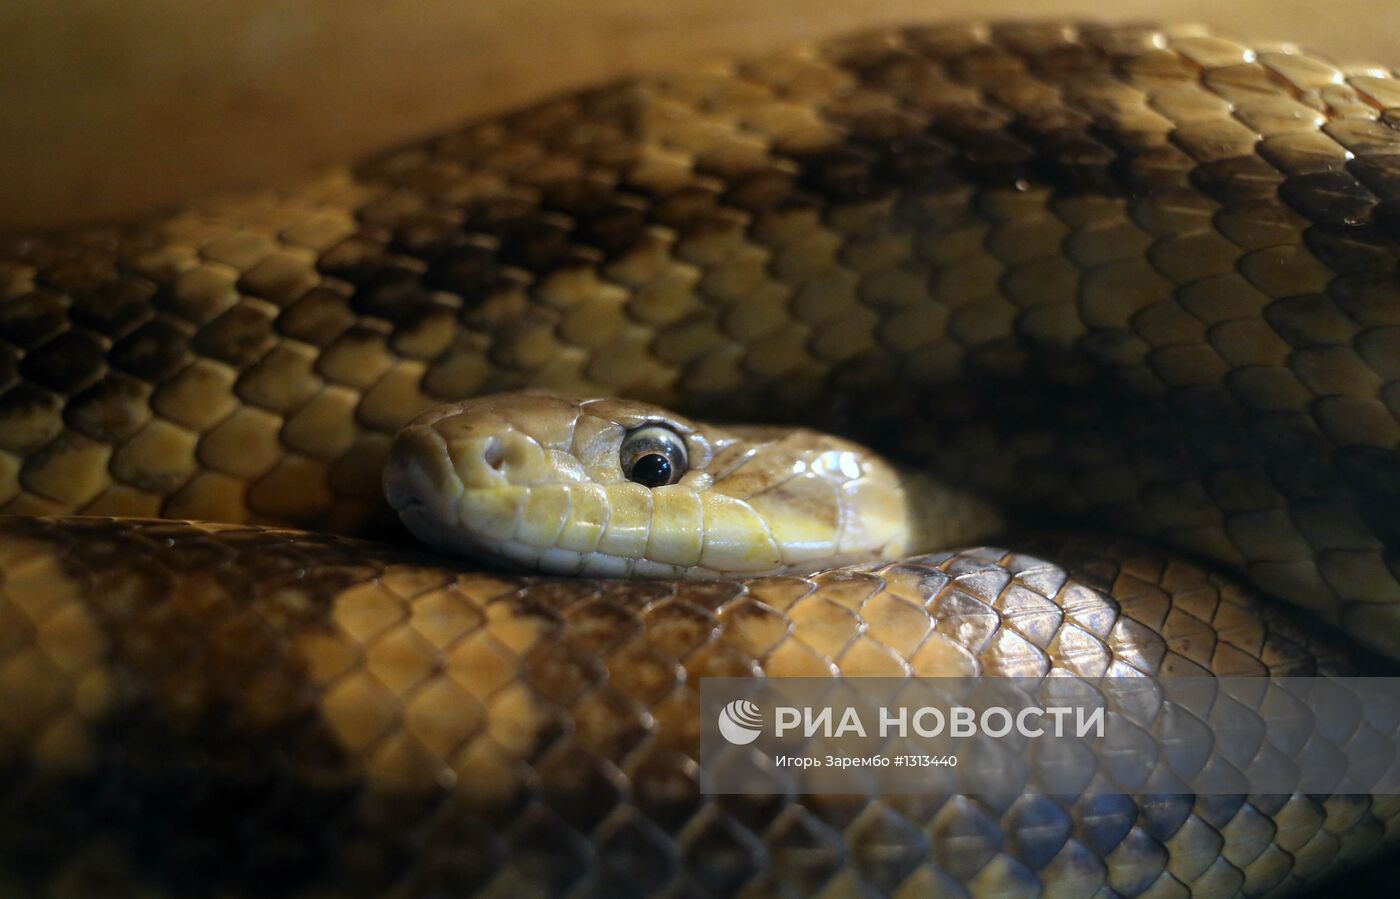 Выставка змей в Калининграде